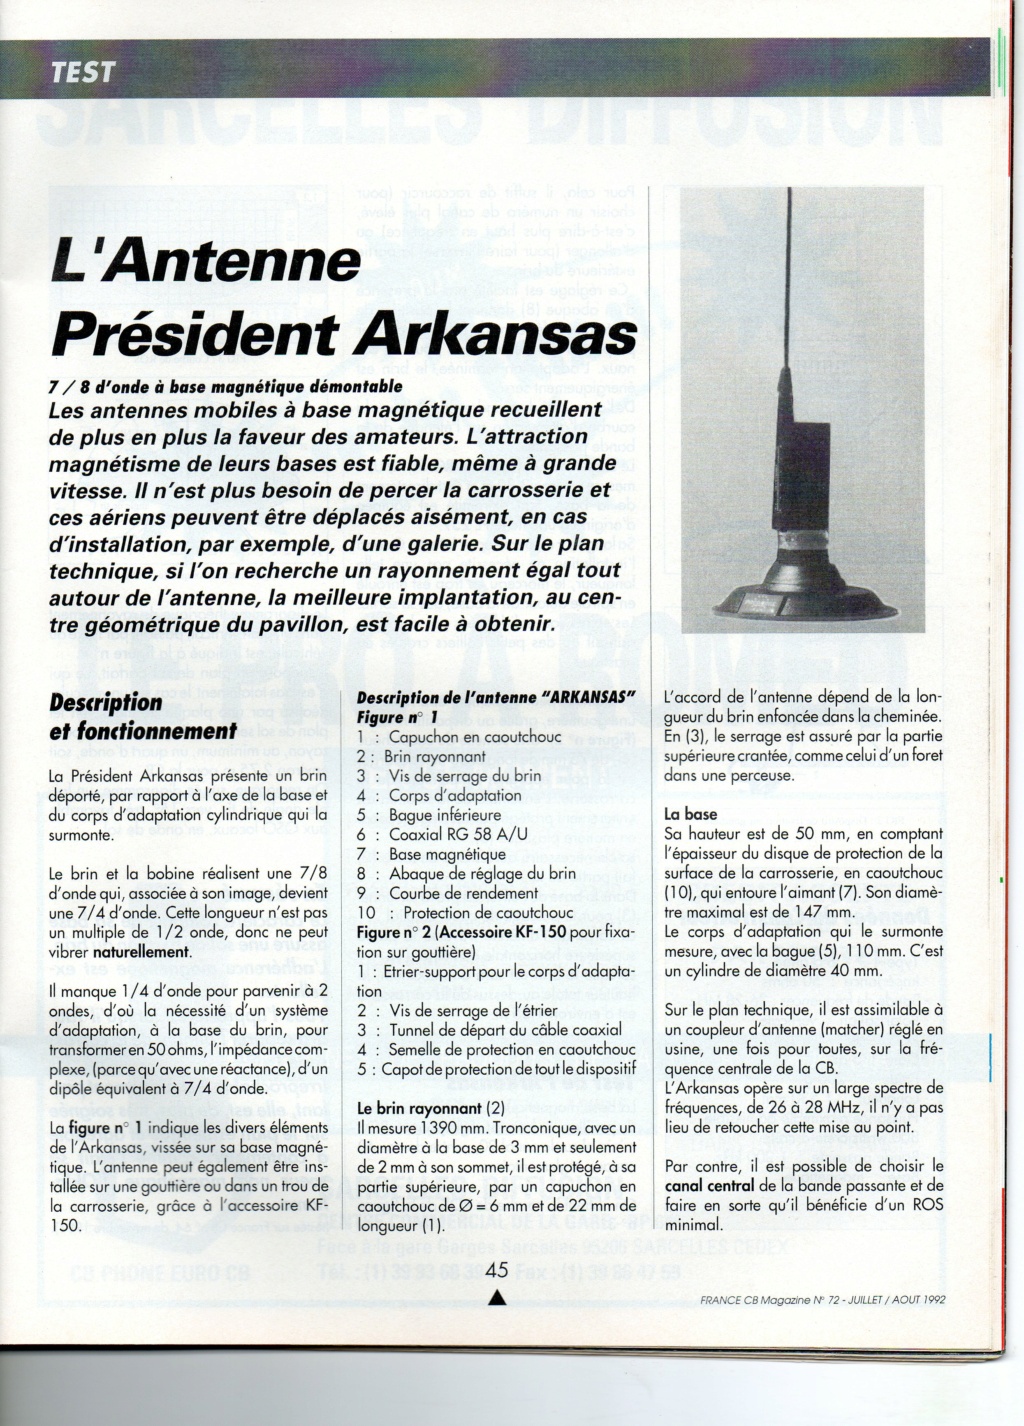 President Oklahoma / Arkansas (Antenne mobile) Img11015